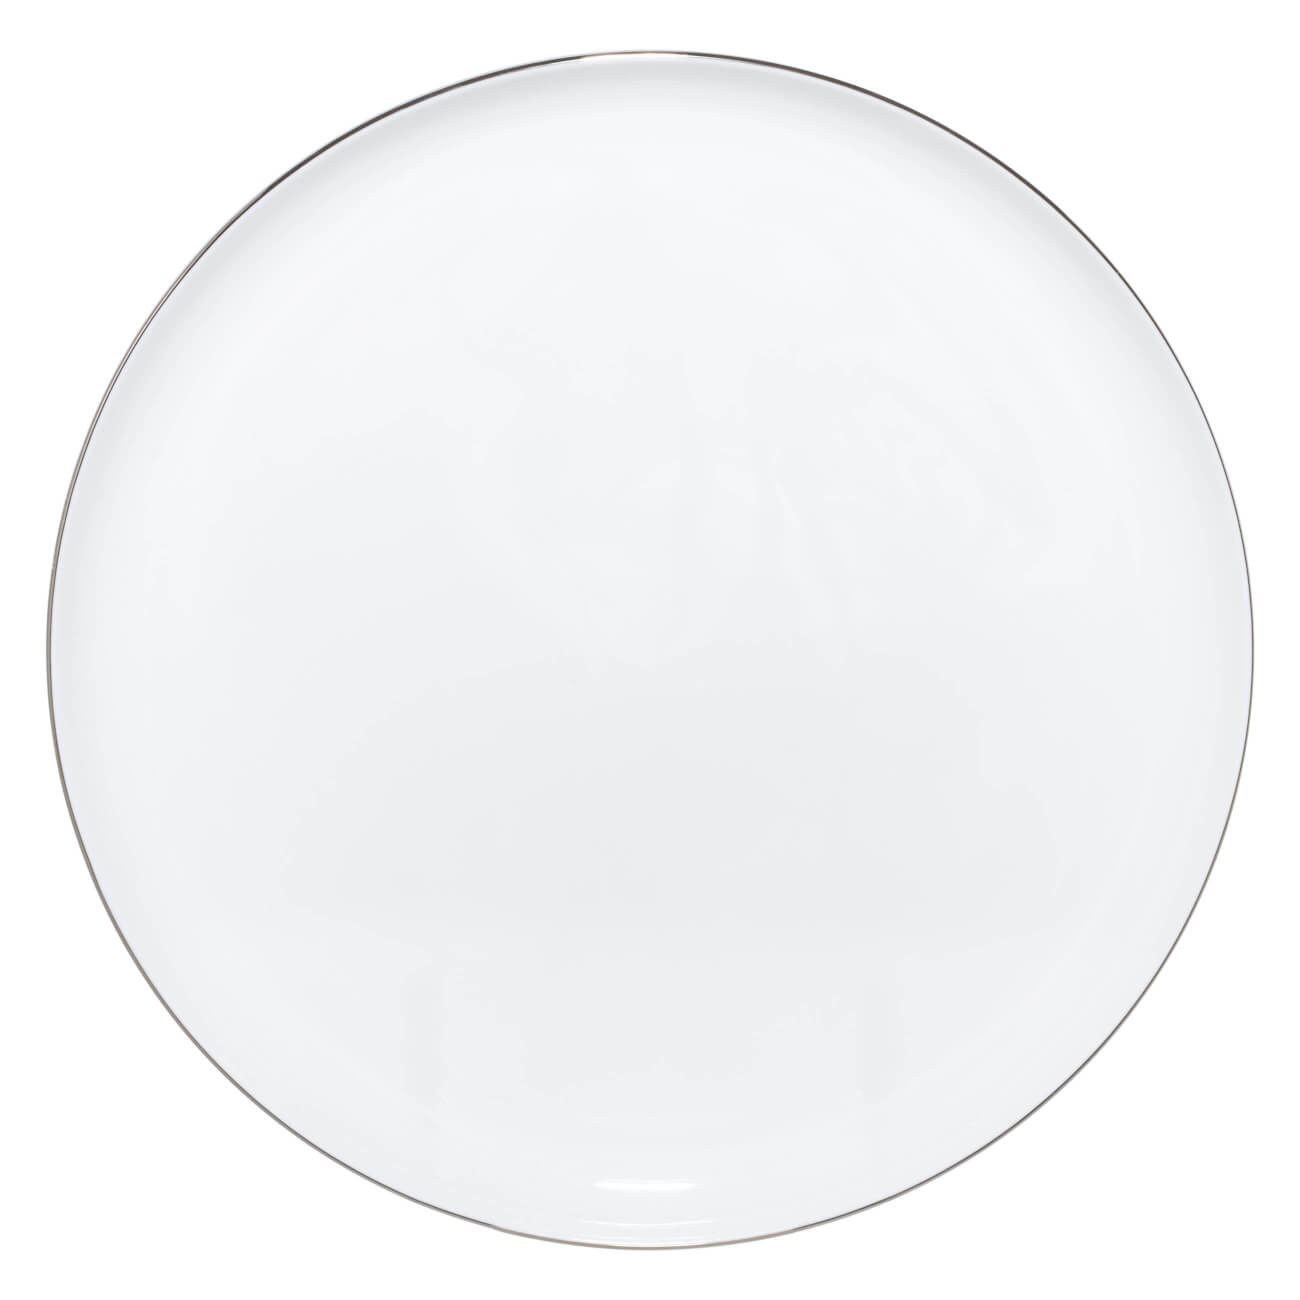 Тарелка обеденная, 28 см, фарфор F, Antarctica керамическая обеденная тарелка perfecto linea